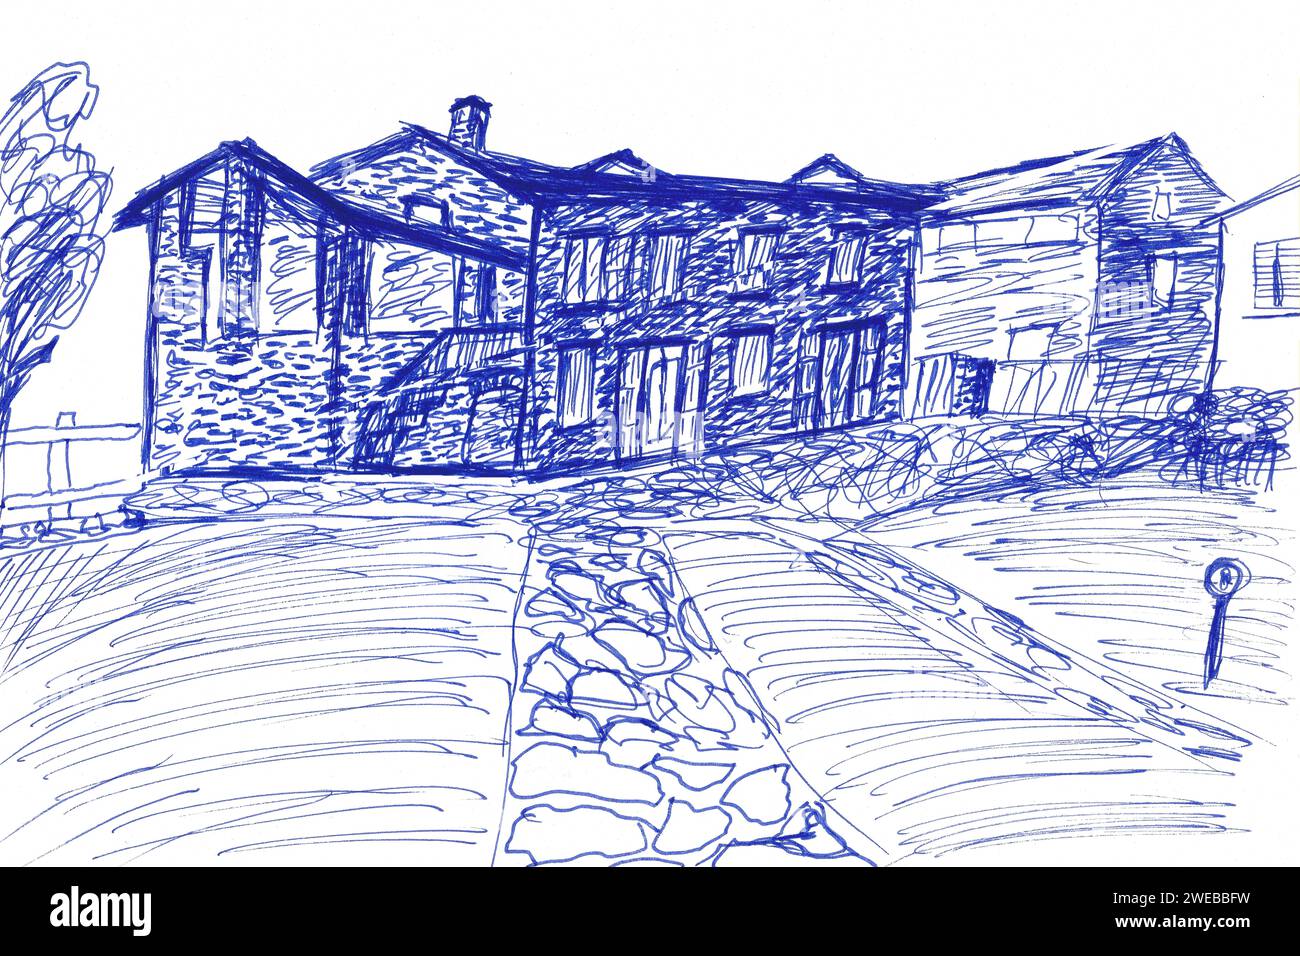 Abstrakte, primitive Zeichnung des italienischen casa Villas. kugelschreiberskizze. Vereinfachtes Zeichnen für die Praxis, das Skizzieren mit Kugelschreiber. Stockfoto